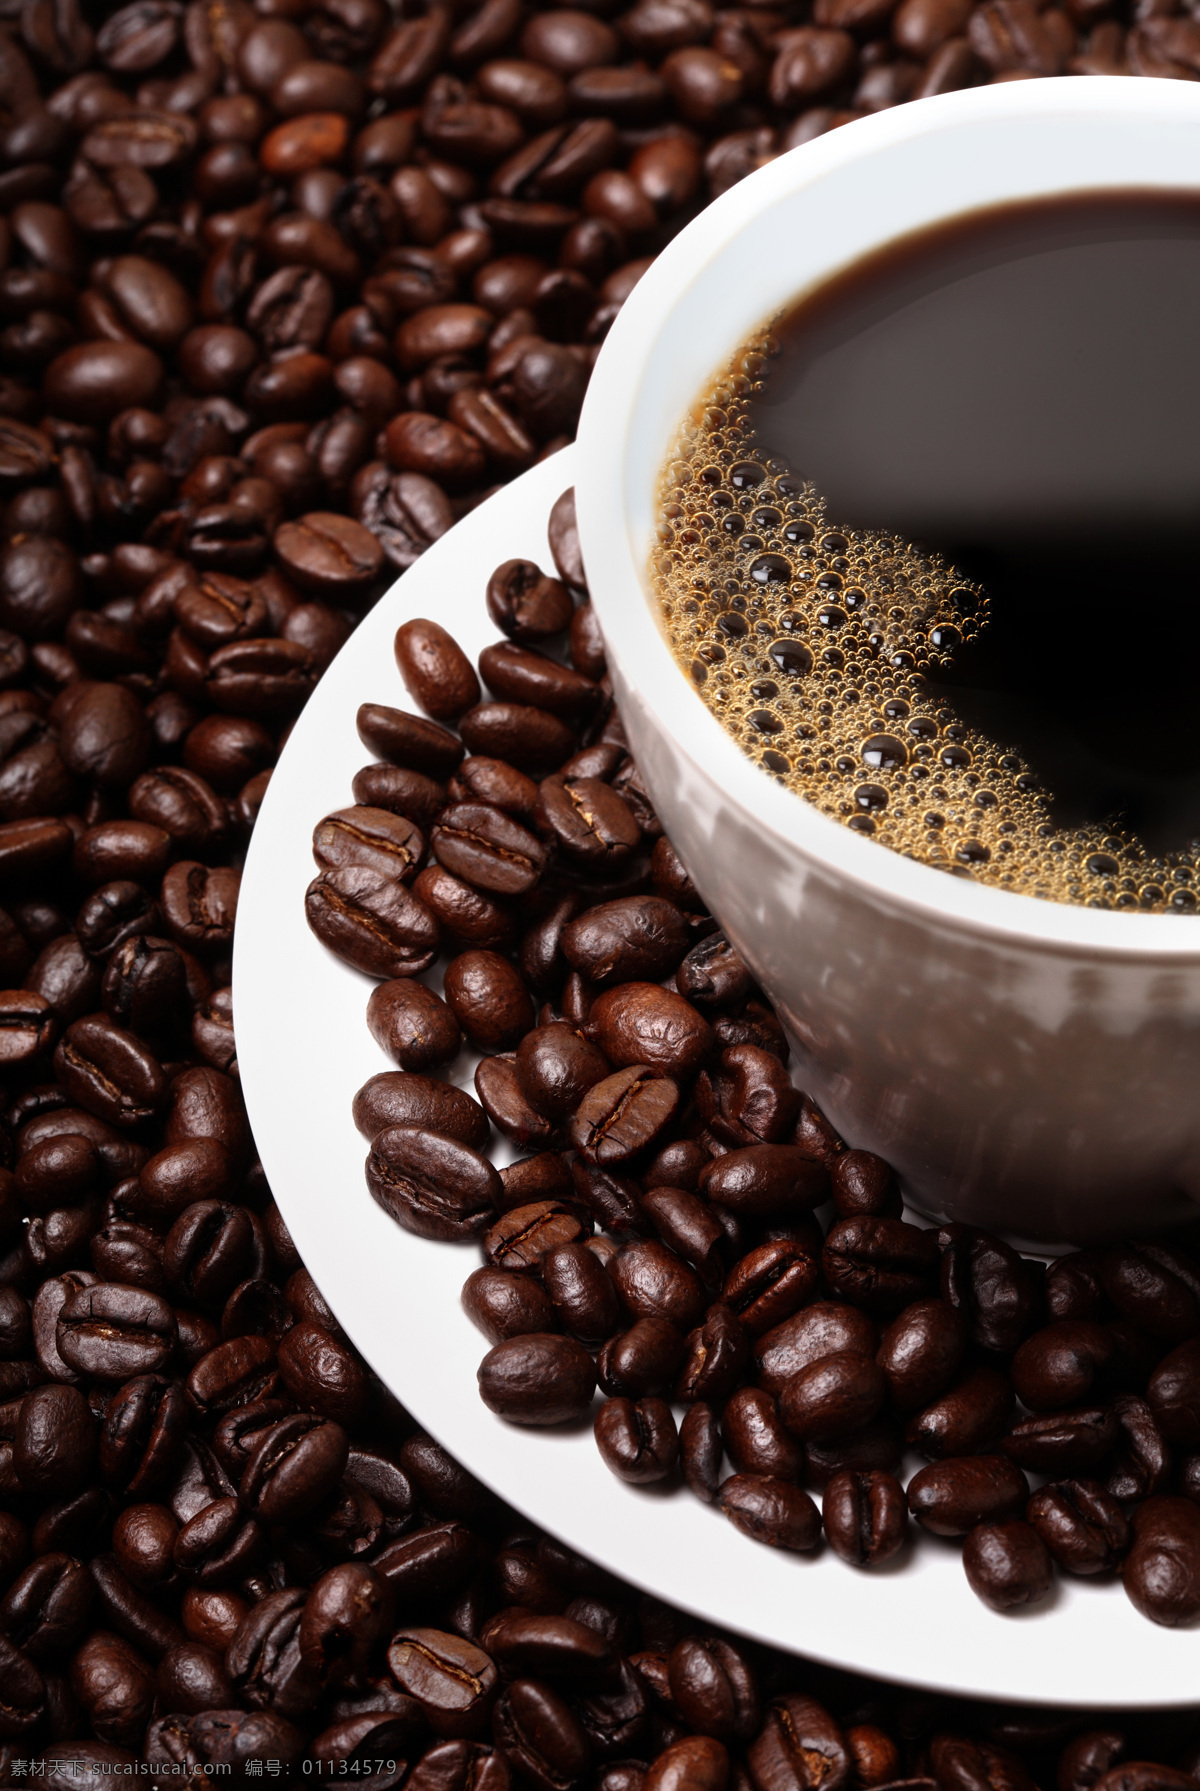 咖啡豆图片 咖啡豆 咖啡 褐色 美式 意式 现磨咖啡 咖啡素材 咖啡摄影 咖啡产品 影棚拍摄 餐饮美食 西餐美食